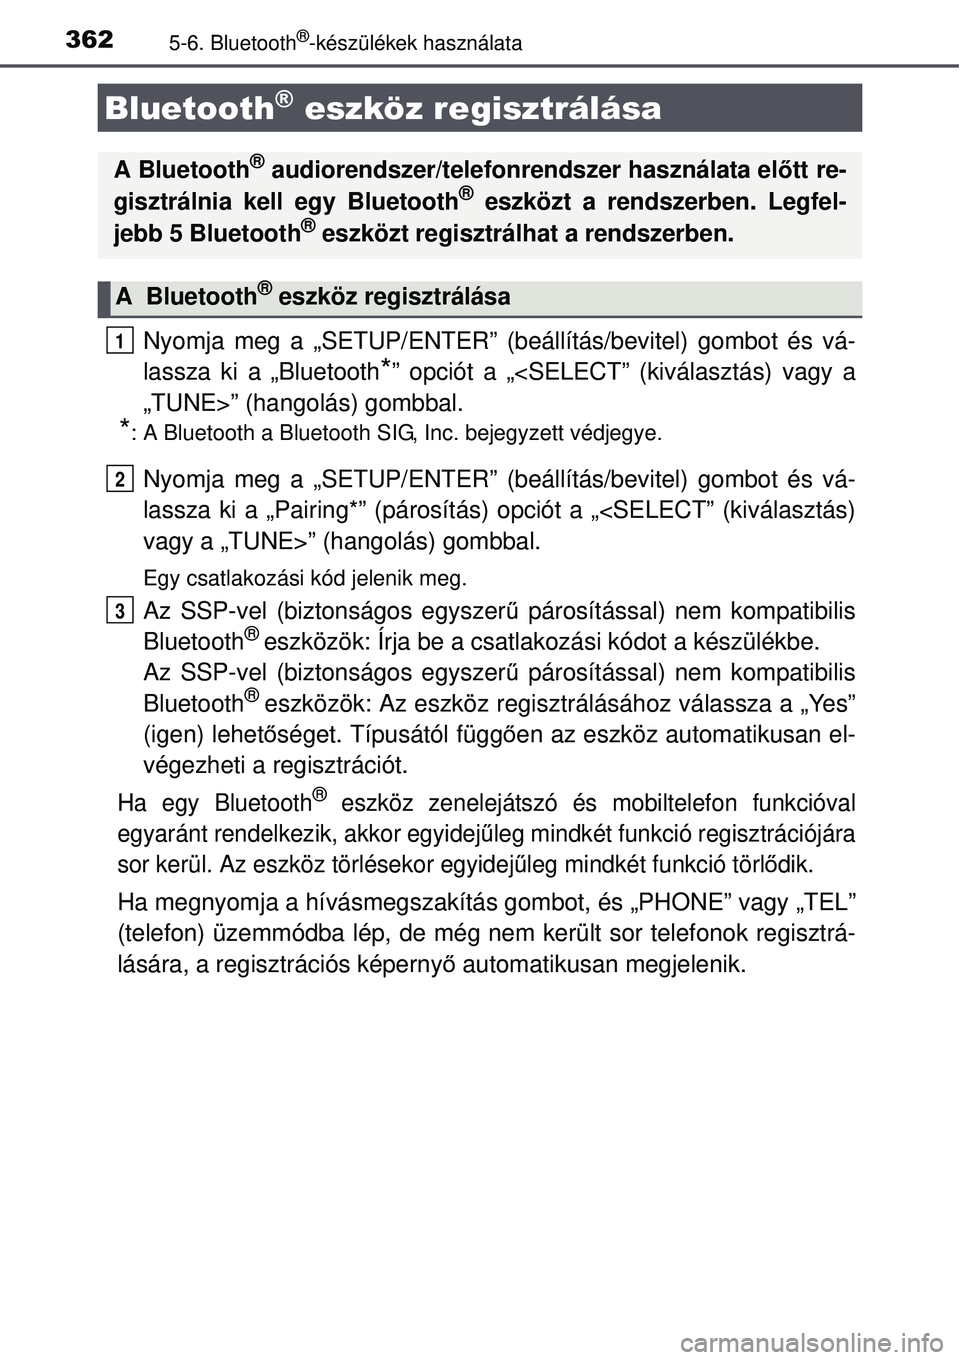 TOYOTA AURIS 2016  Kezelési útmutató (in Hungarian) 3625-6. Bluetooth®-készülékek használata
Nyomja meg a „SETUP/ENTER” (beállítás/bevitel) gombot és vá-
lassza ki a „Bluetooth
*” opciót a „<SELECT” (kiválasztás) vagy a
„TUNE